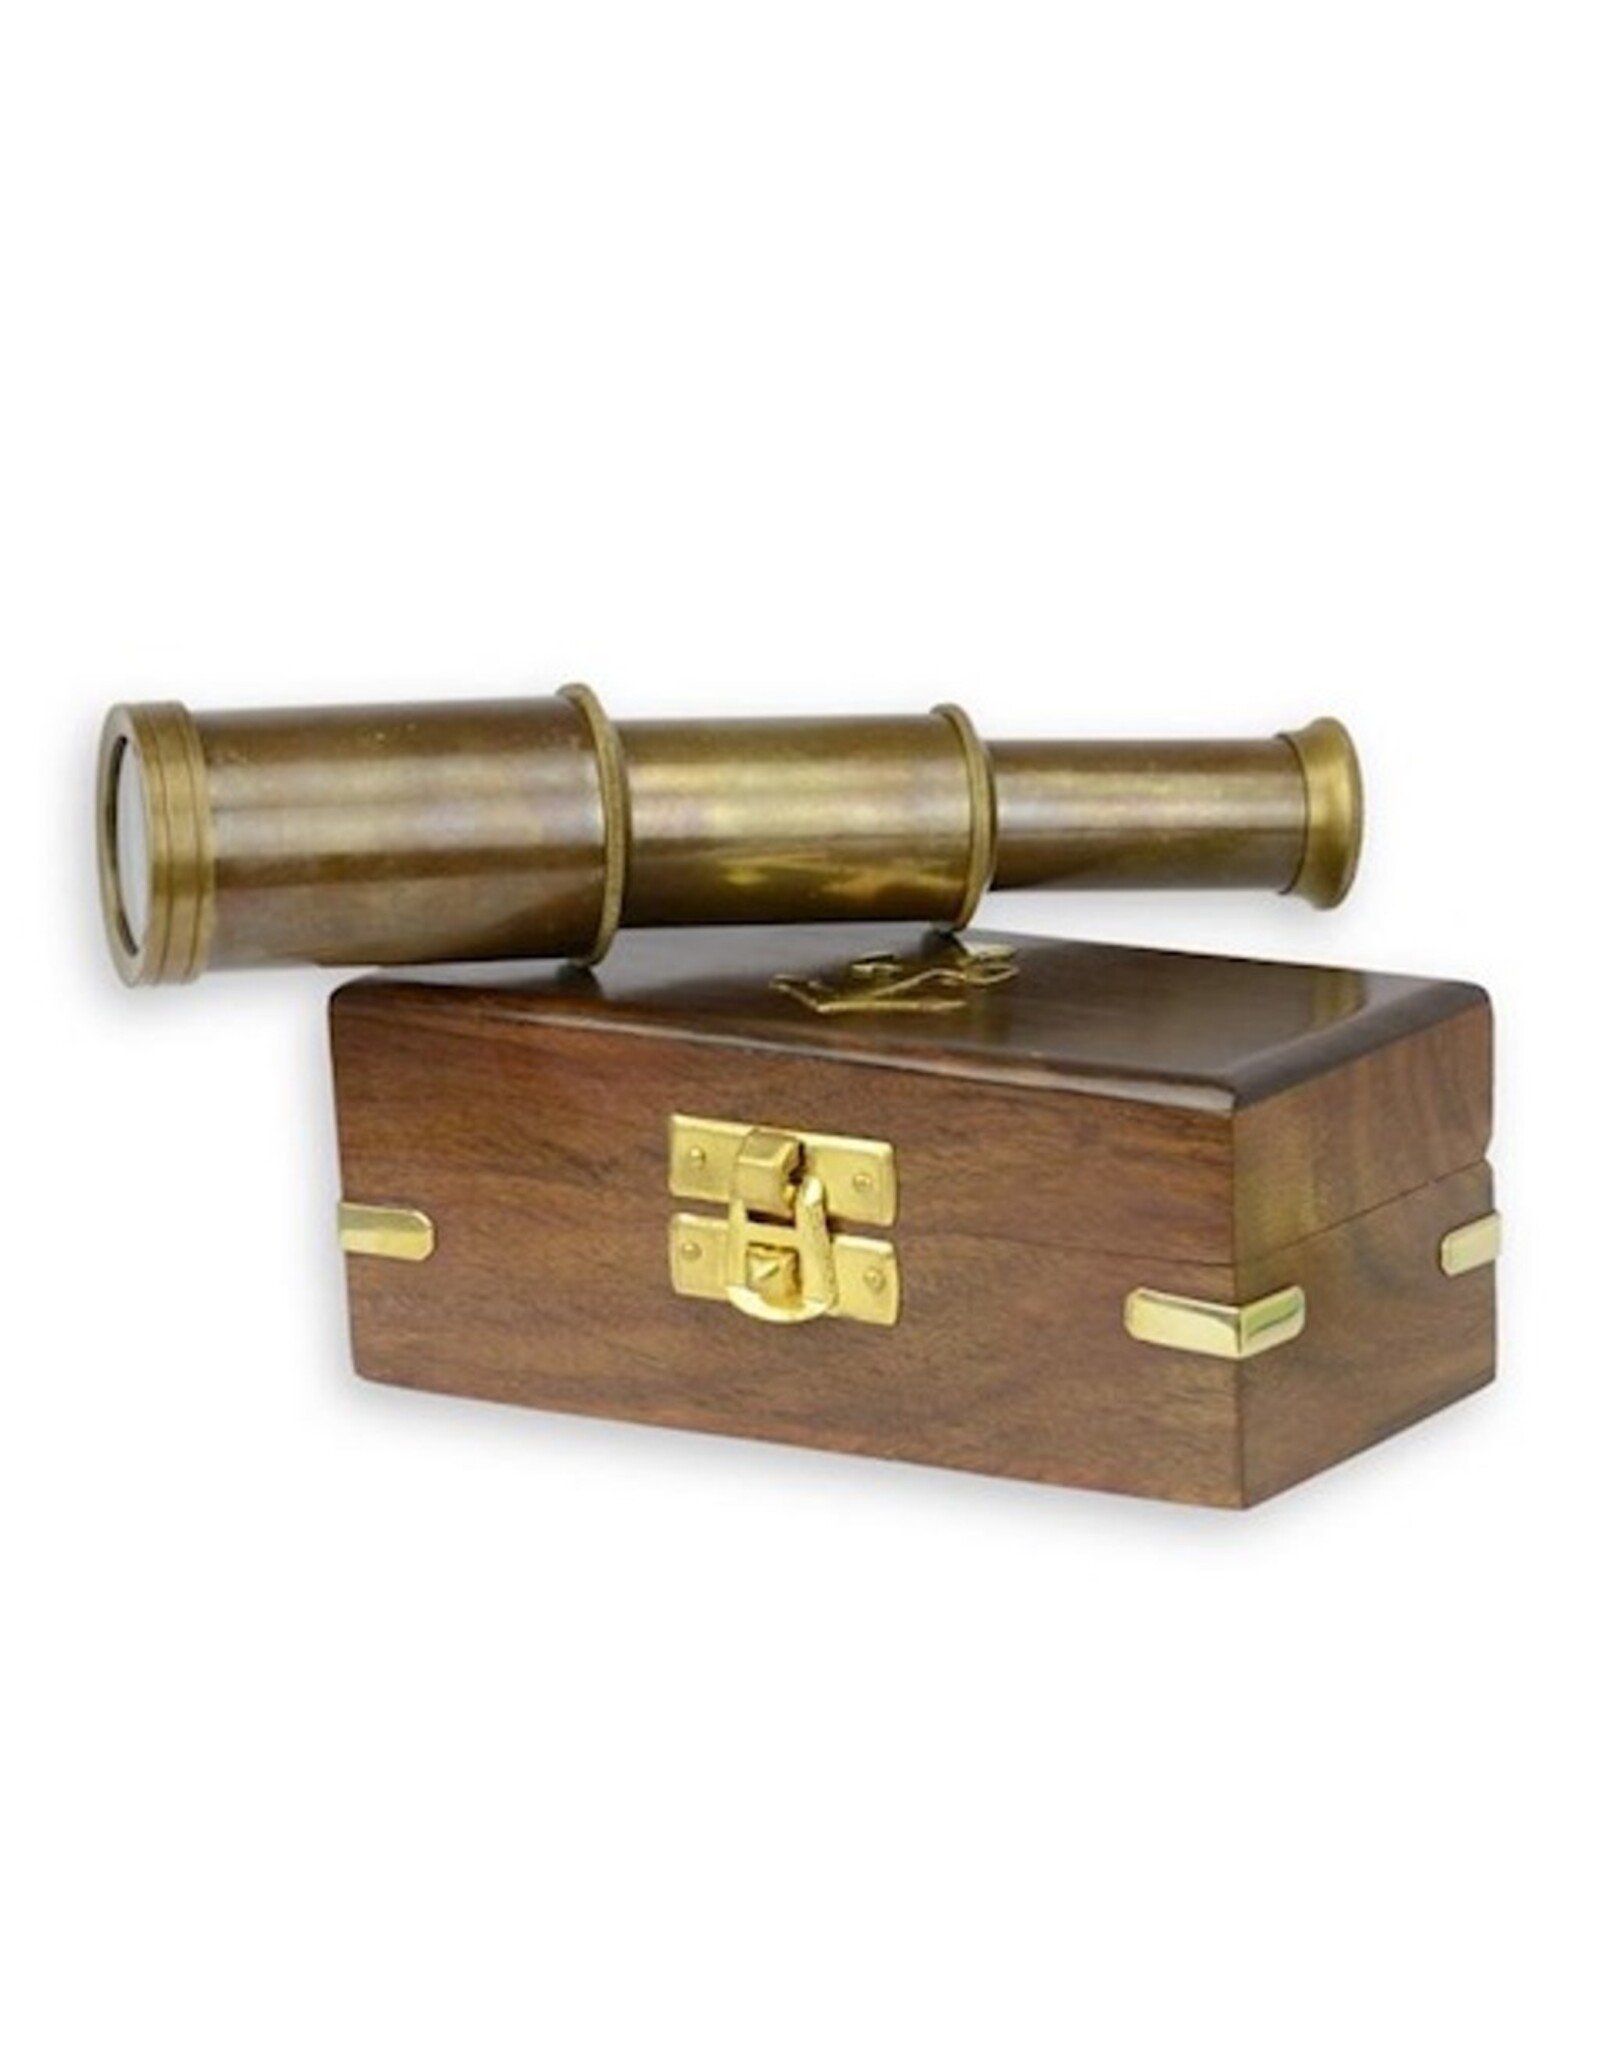 Trukado Miscellaneous - Brass Mini Telescope in wooden box